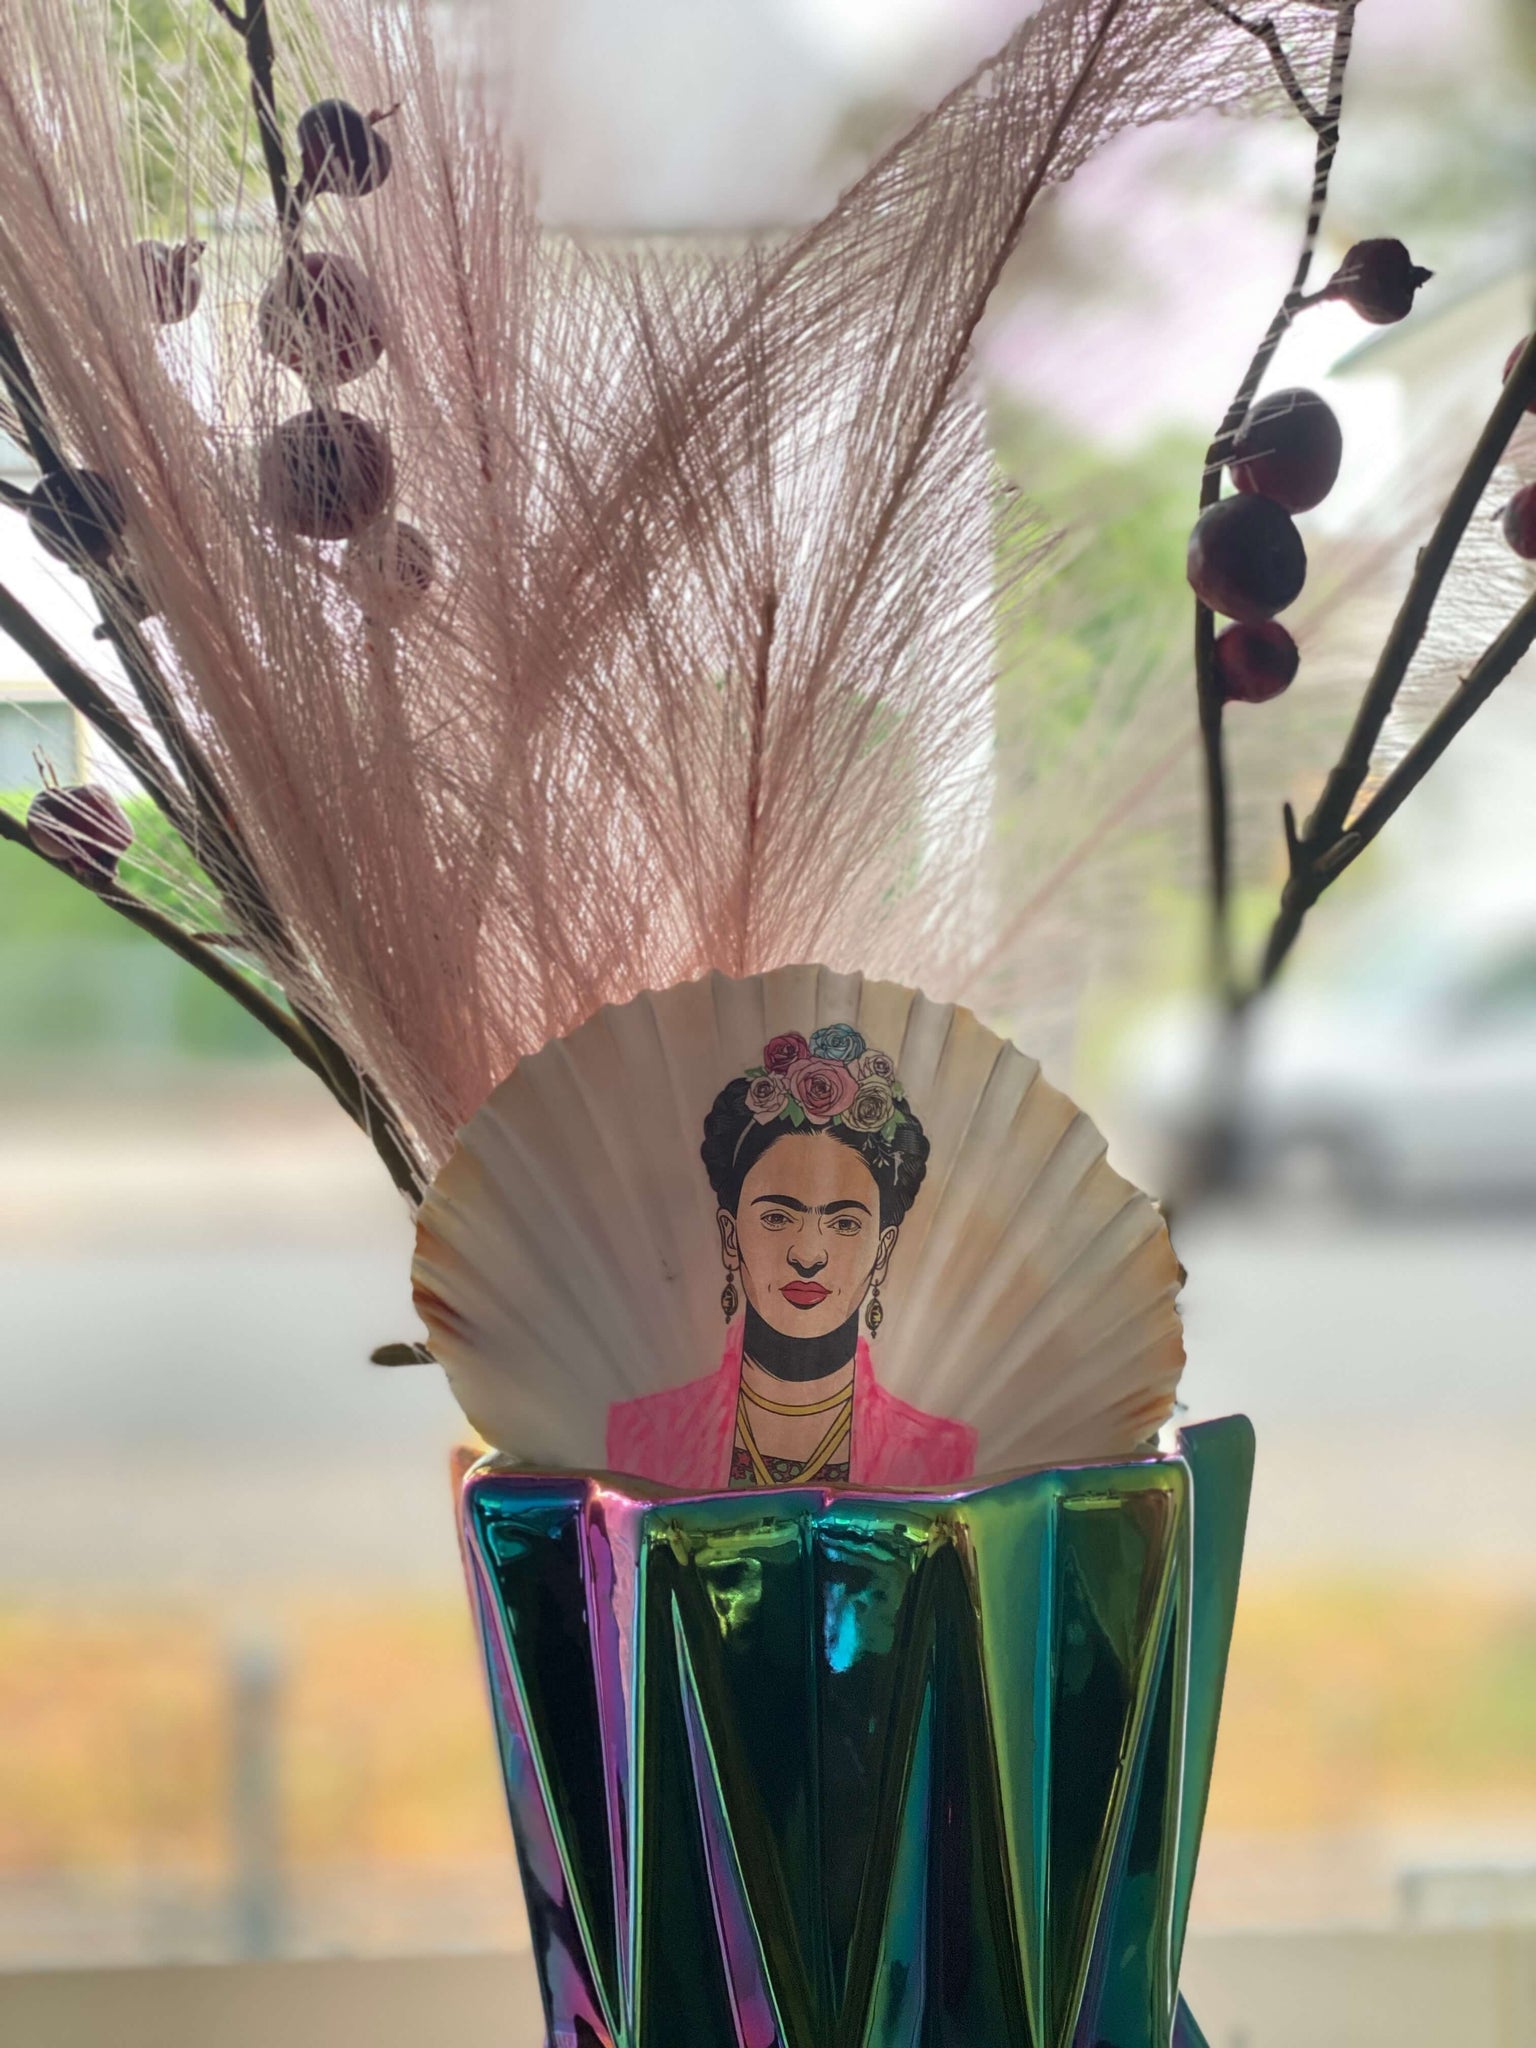 Frida Kollektion: echte Jakobsmuschel ei-nzigartig